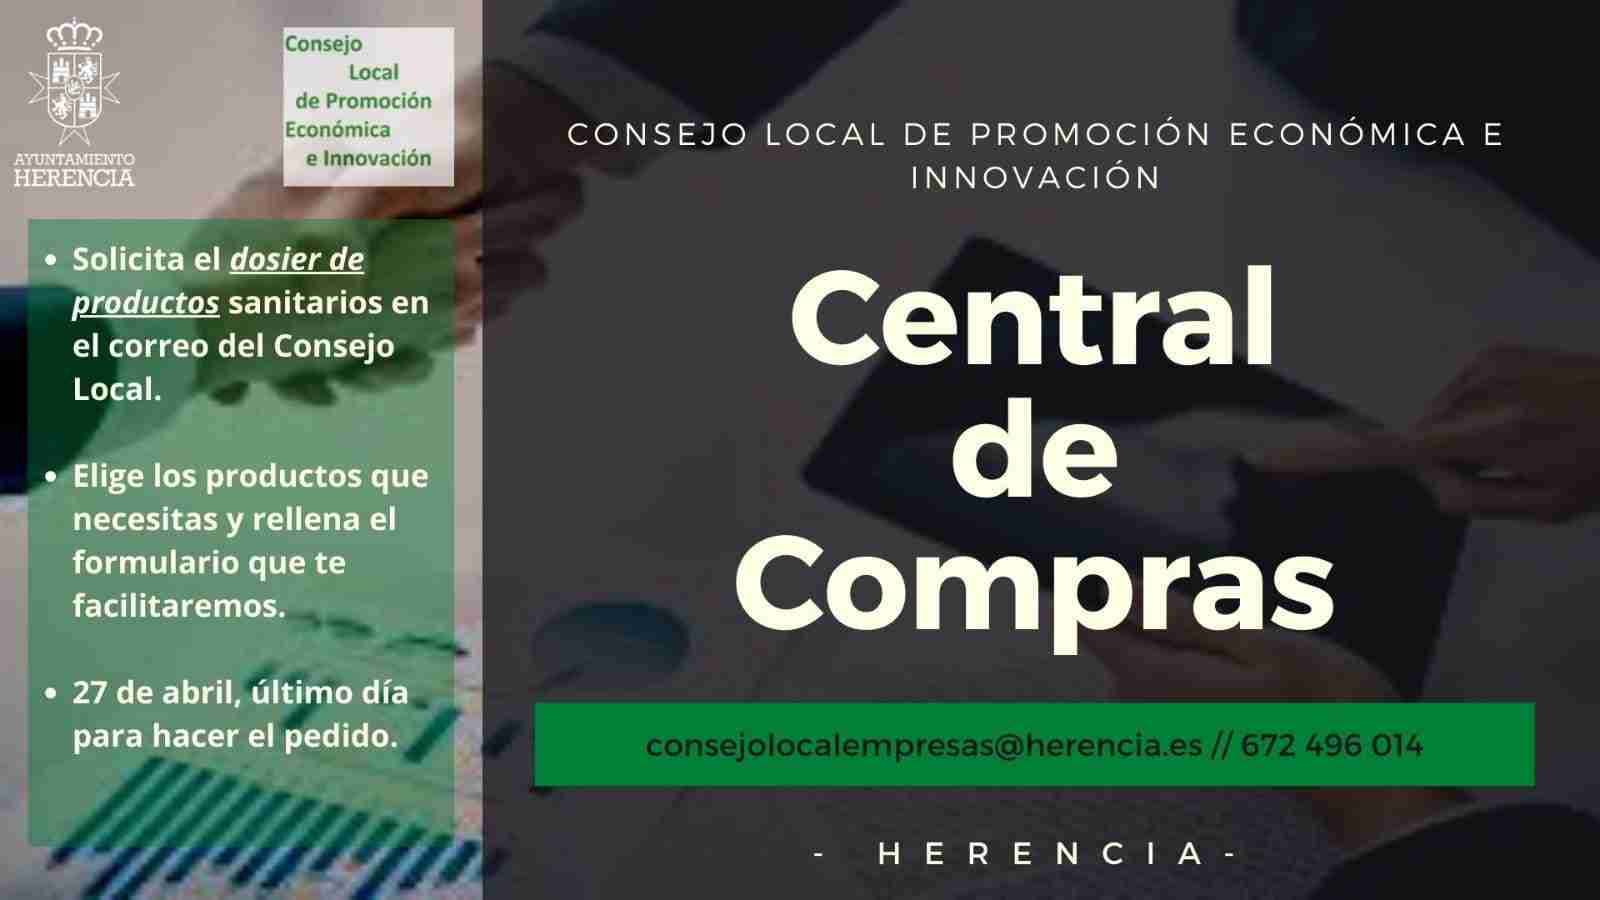 El Consejo Local de Promoción Económica e Innovación de Herencia pone en marcha una “central de compras” de material sanitario para empresas y autónomos 1